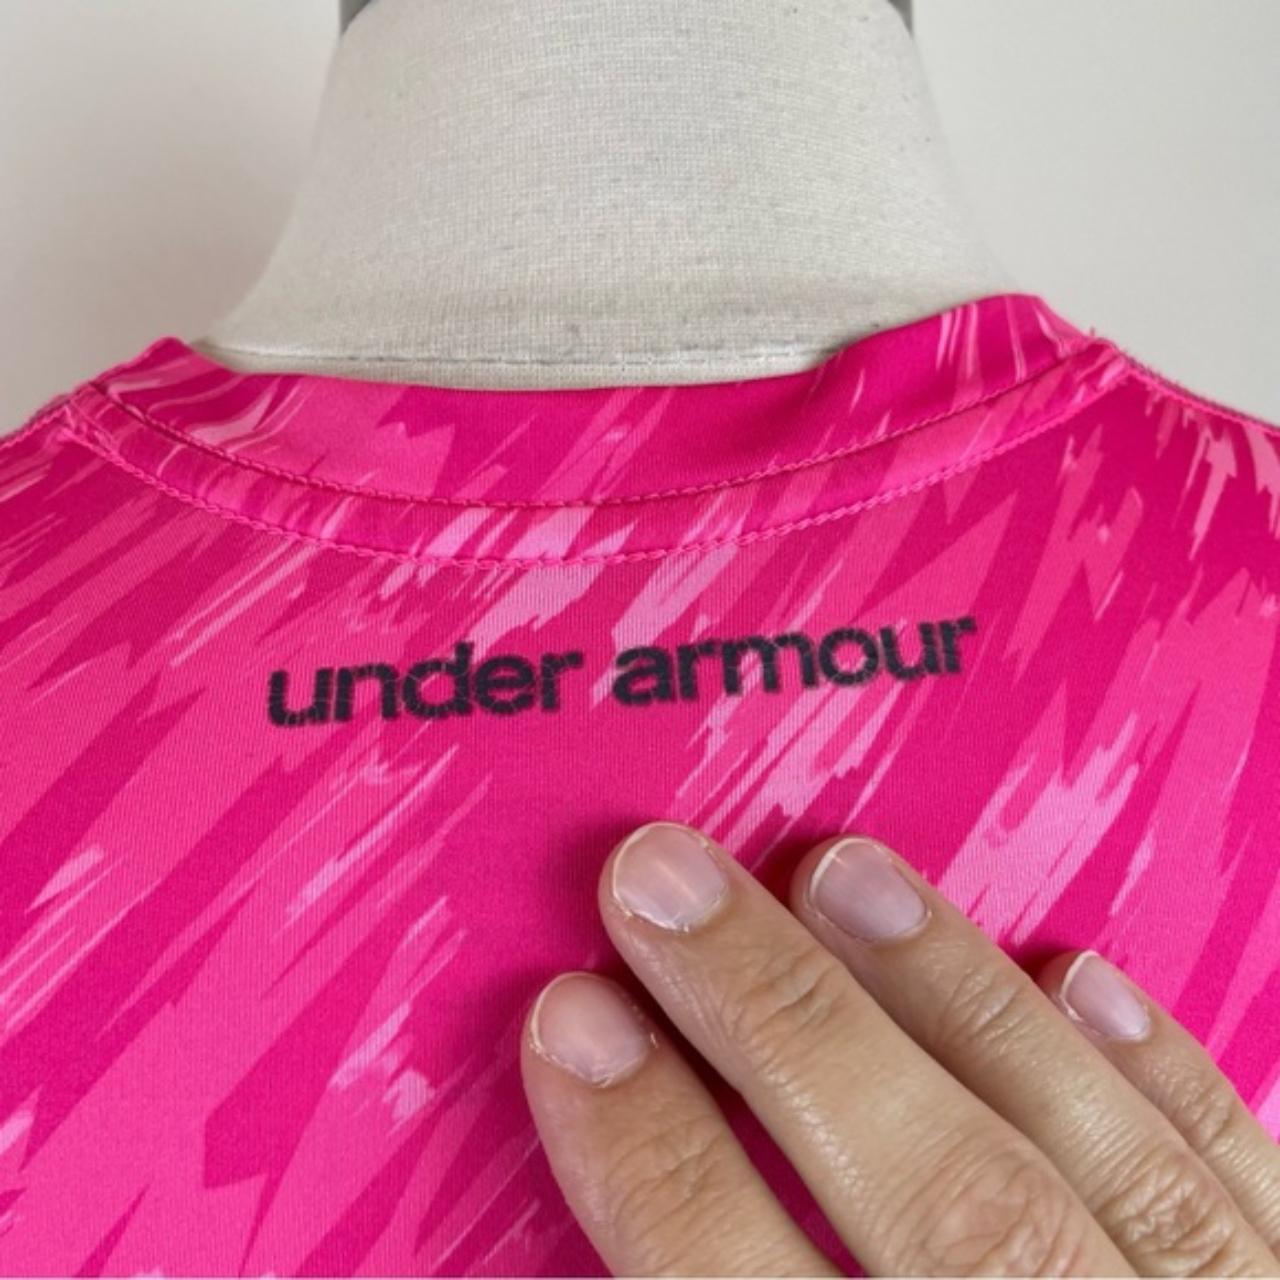 Under Armour Pink Short Sleeve Heat Gear Shirt Top